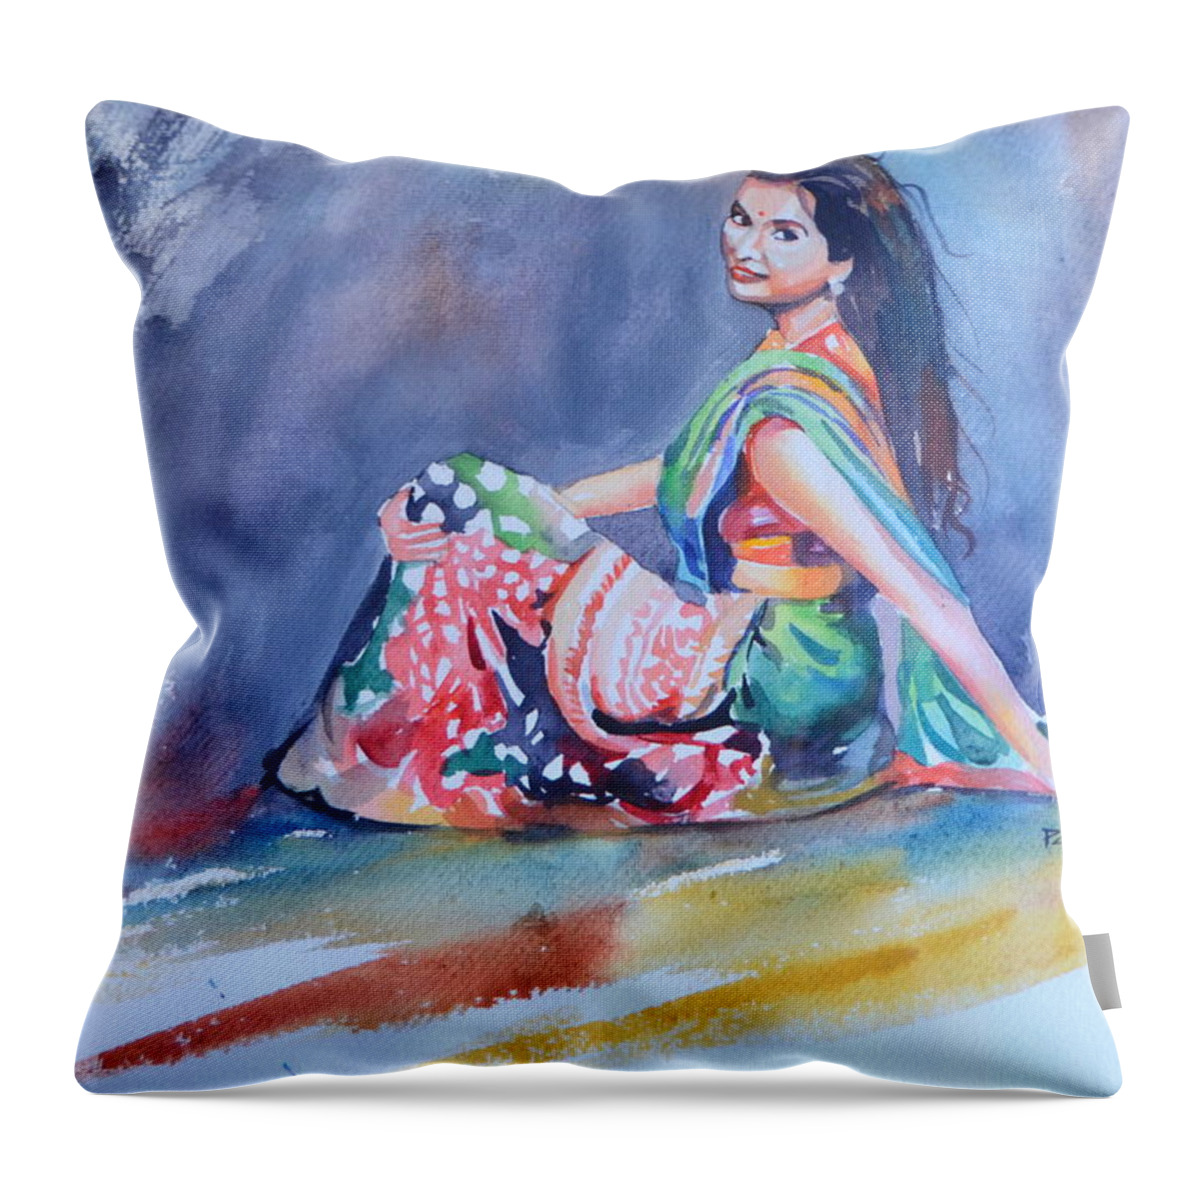 Joy; Woman In Saree Throw Pillow featuring the drawing Joy of Life by Parag Pendharkar